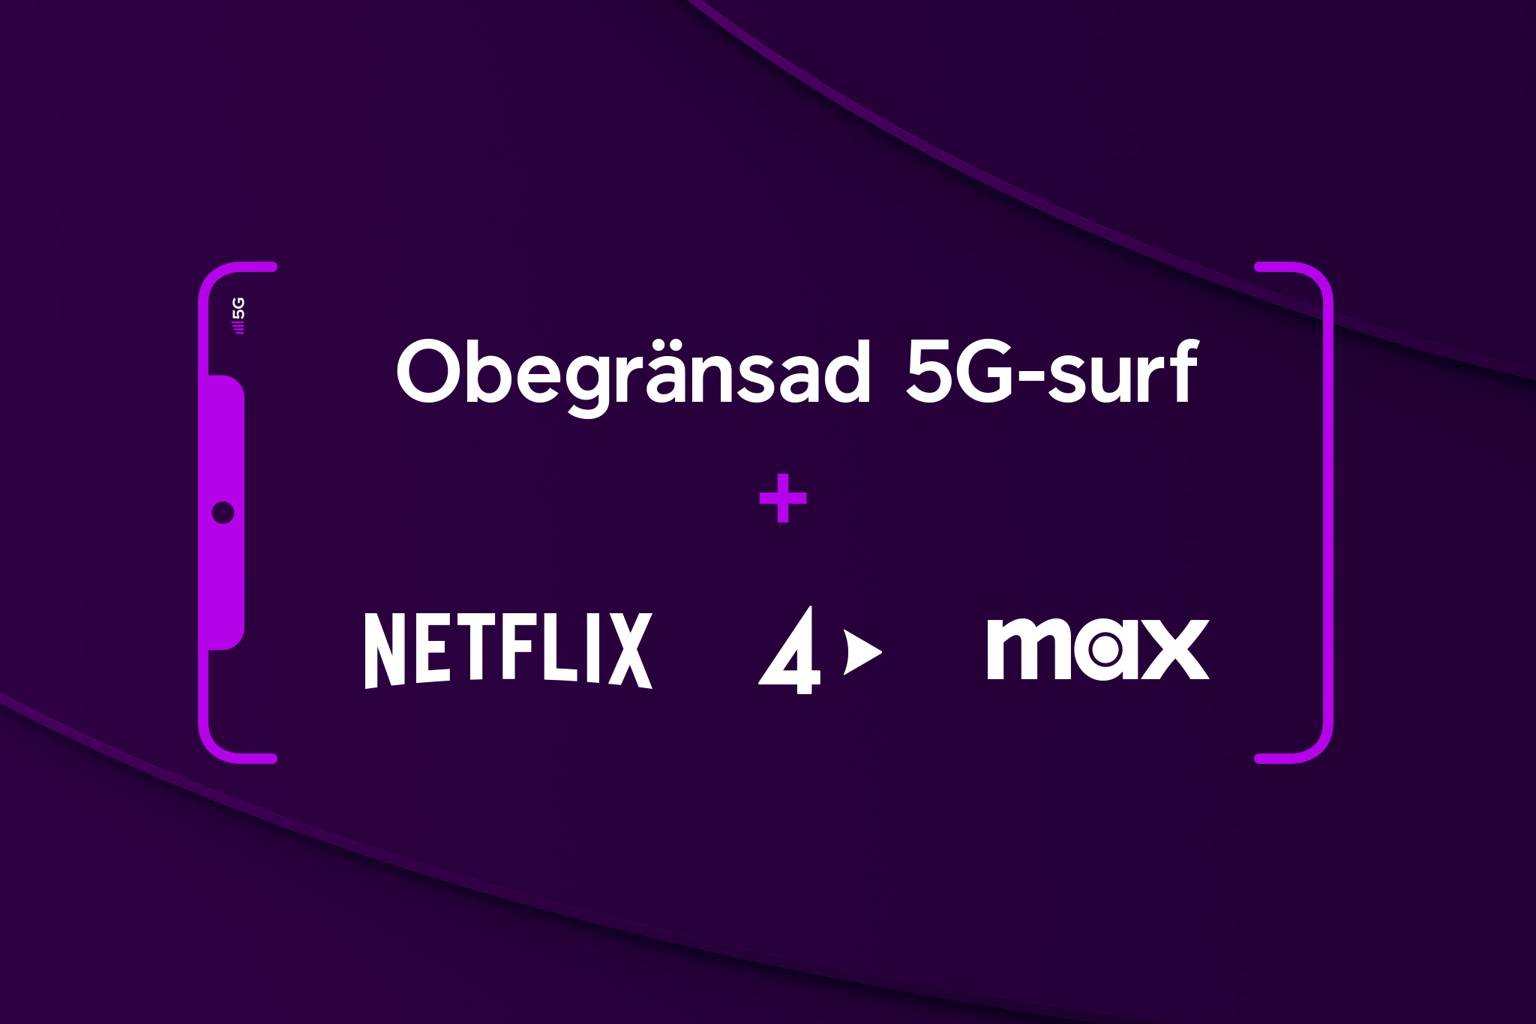 Netflix, TV4 Play och Max logotyper bredvid varandra med texten "Obegränsad 5G-surf +" ovanför.